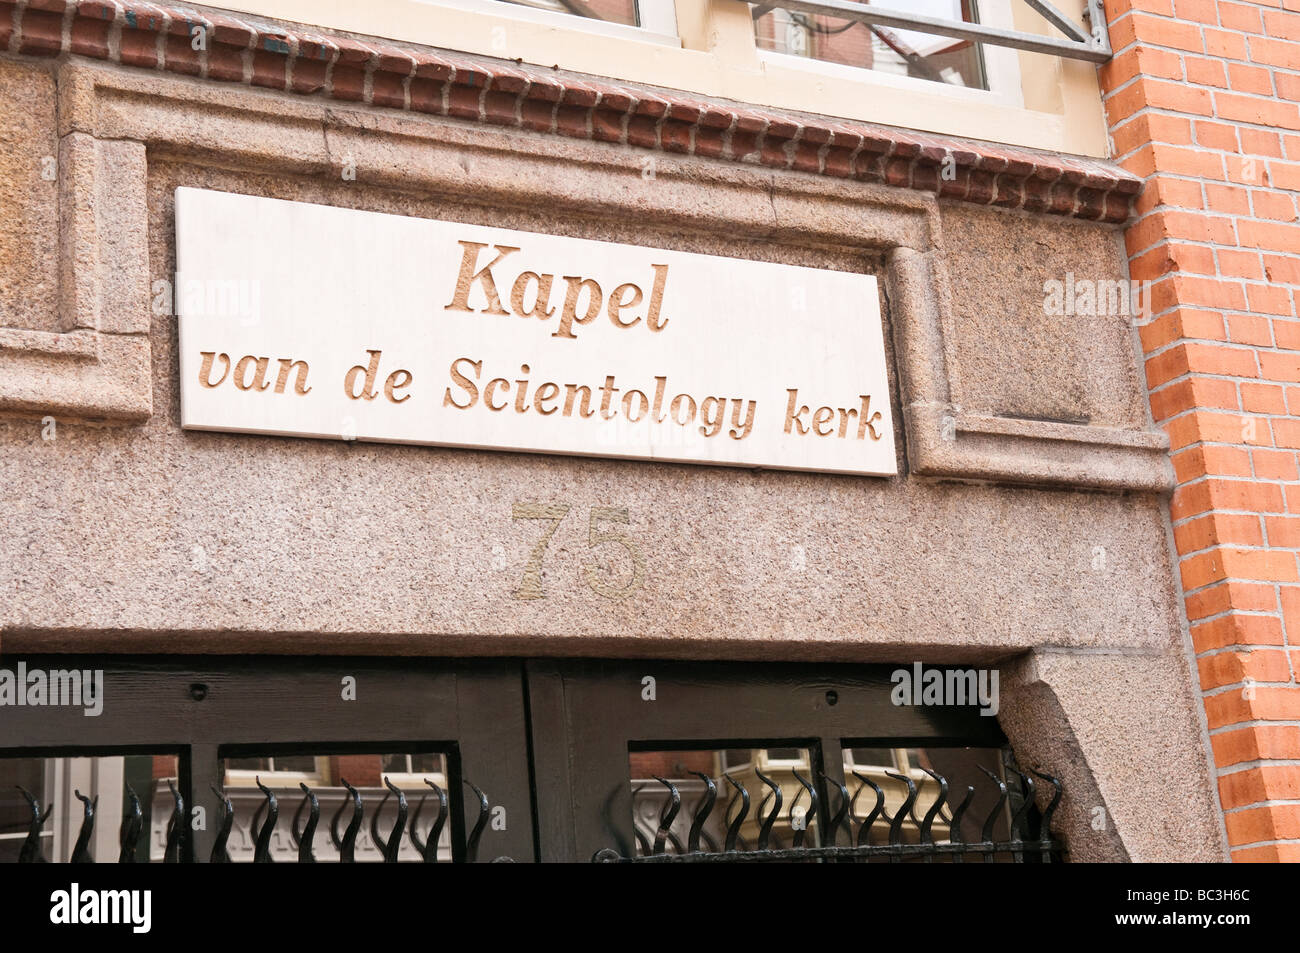 Porte à l'Eglise de scientologie d'Amsterdam Banque D'Images